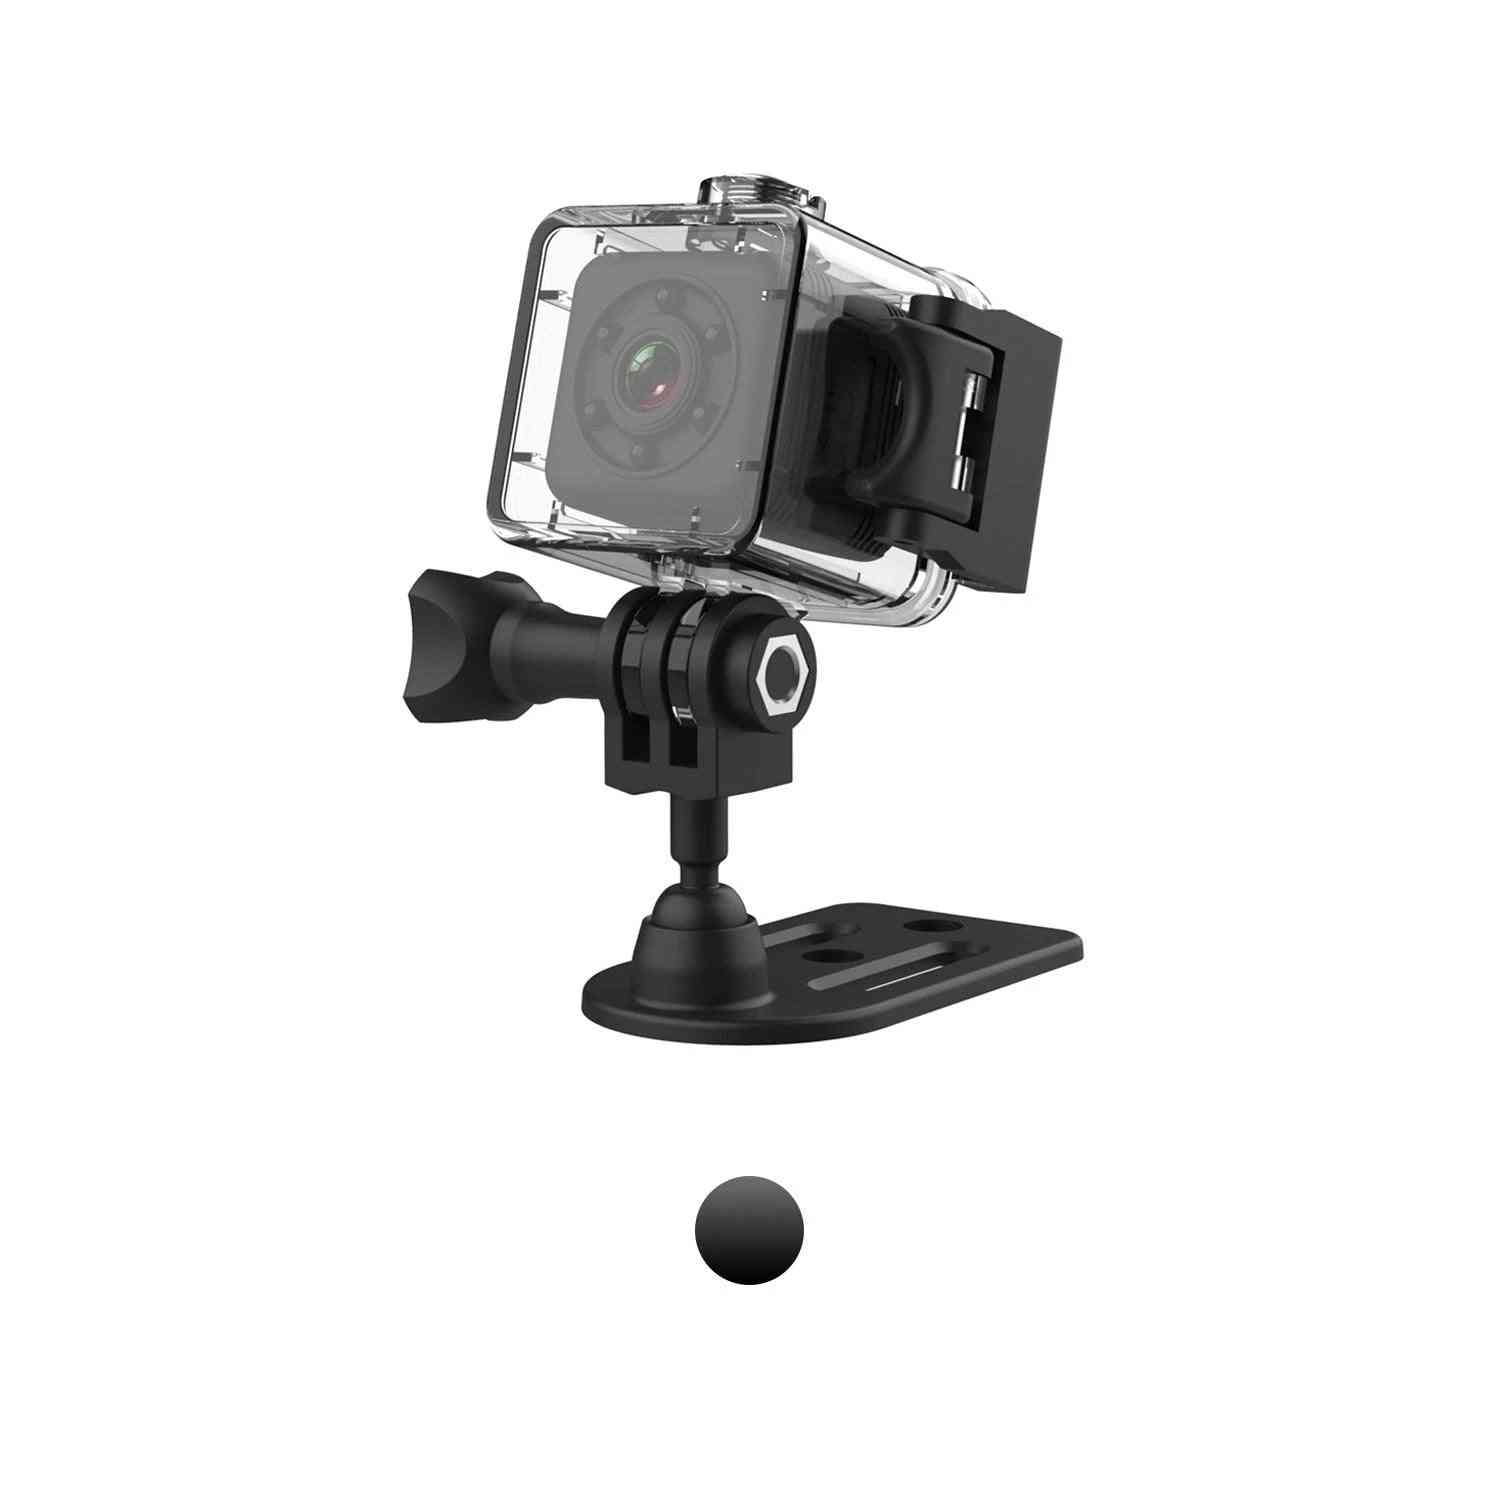 Sportovní mini IP kamera sq29 pro noční vidění, vodotěsný pohyb videokamery, dvr mikro kamera sport